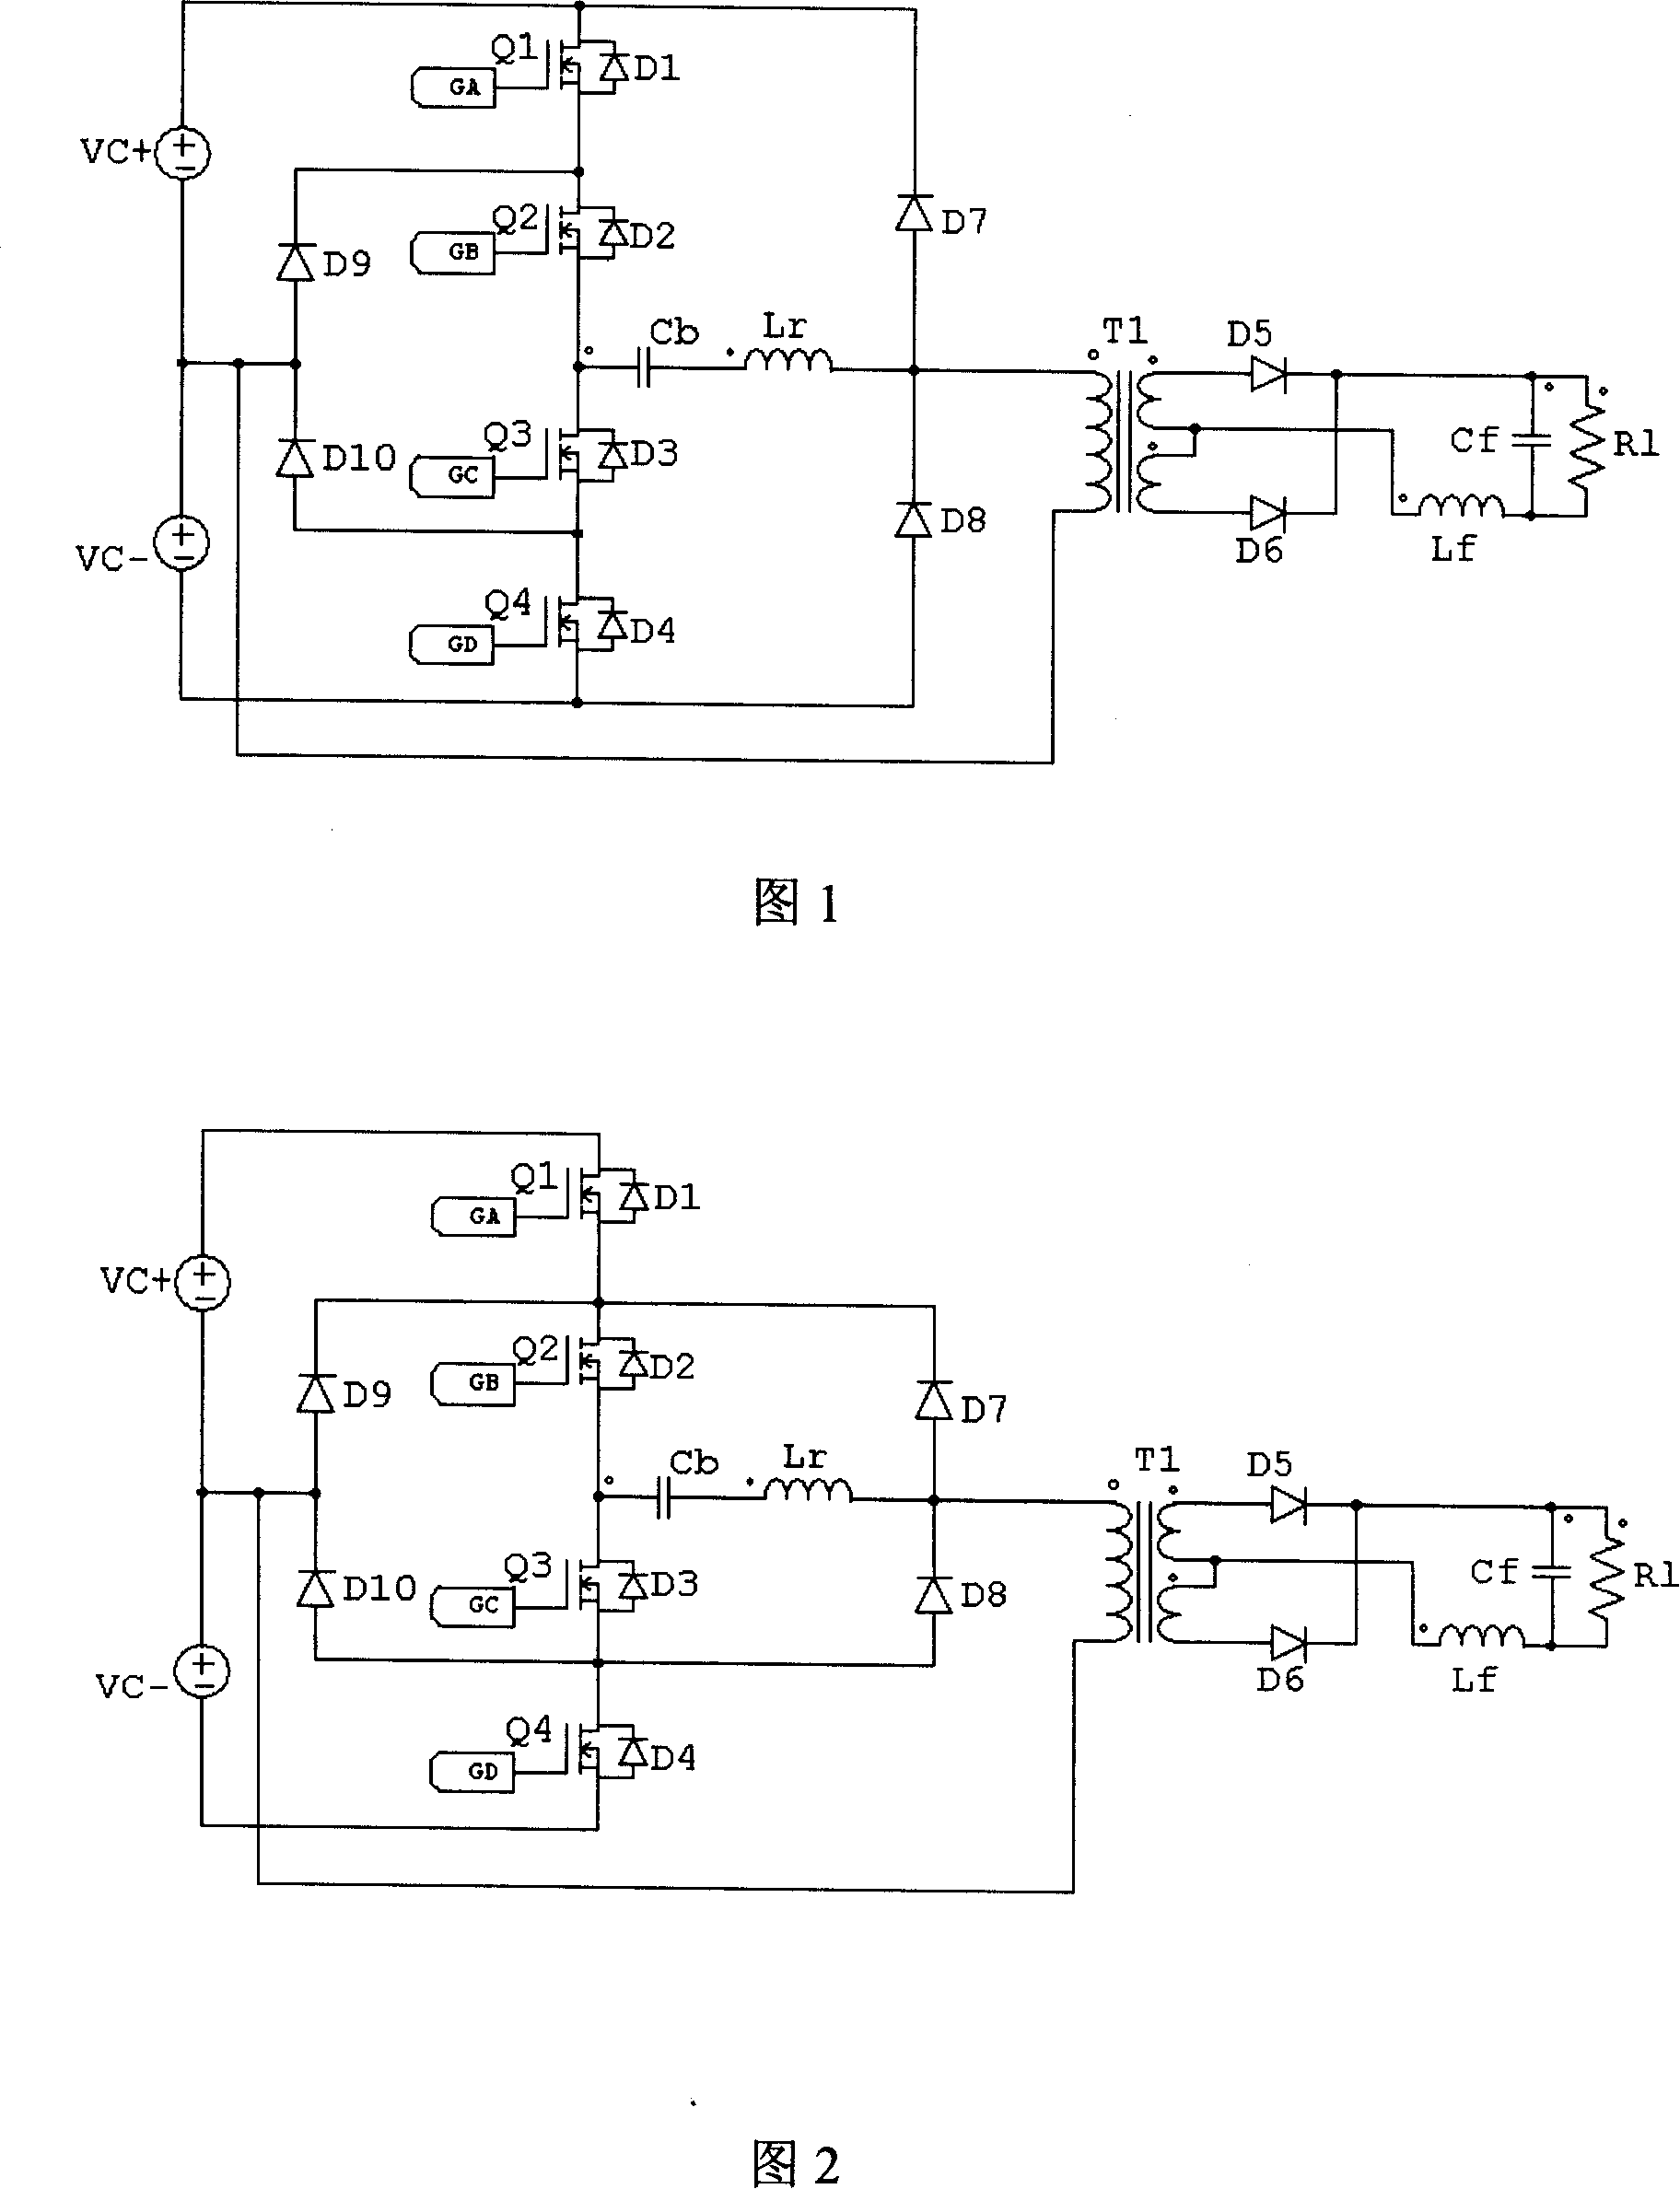 Original edge clamp circuit of DC converter